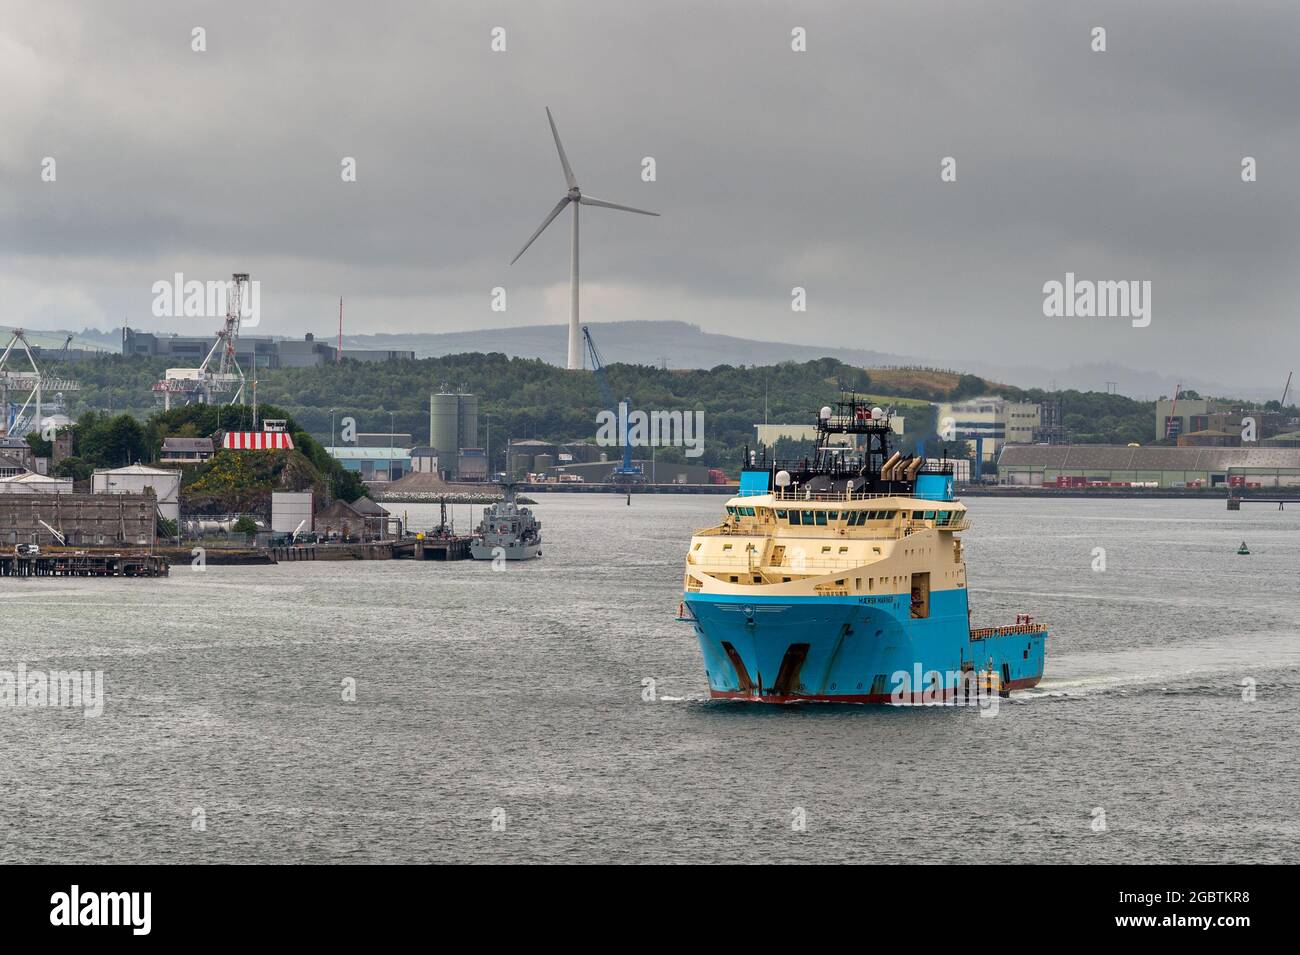 Cobh, Contea di Cork, Irlanda. 5 agosto 2021. MET Éireann ha emesso un avvertimento giallo per pioggia intensa e temporali che porterà a inondazioni localizzate e condizioni di guida pericolose. L'avviso è in vigore fino alle 22.00 di stasera. Il Cork Pilot è a bordo di una nave di fornitura offshore "Maersk Mariner" per pilotarla fuori dal porto, con LÉ William Butler Yeats ormeggiato alla base navale di Haulbowline. Credit: AG News/Alamy Live News Foto Stock